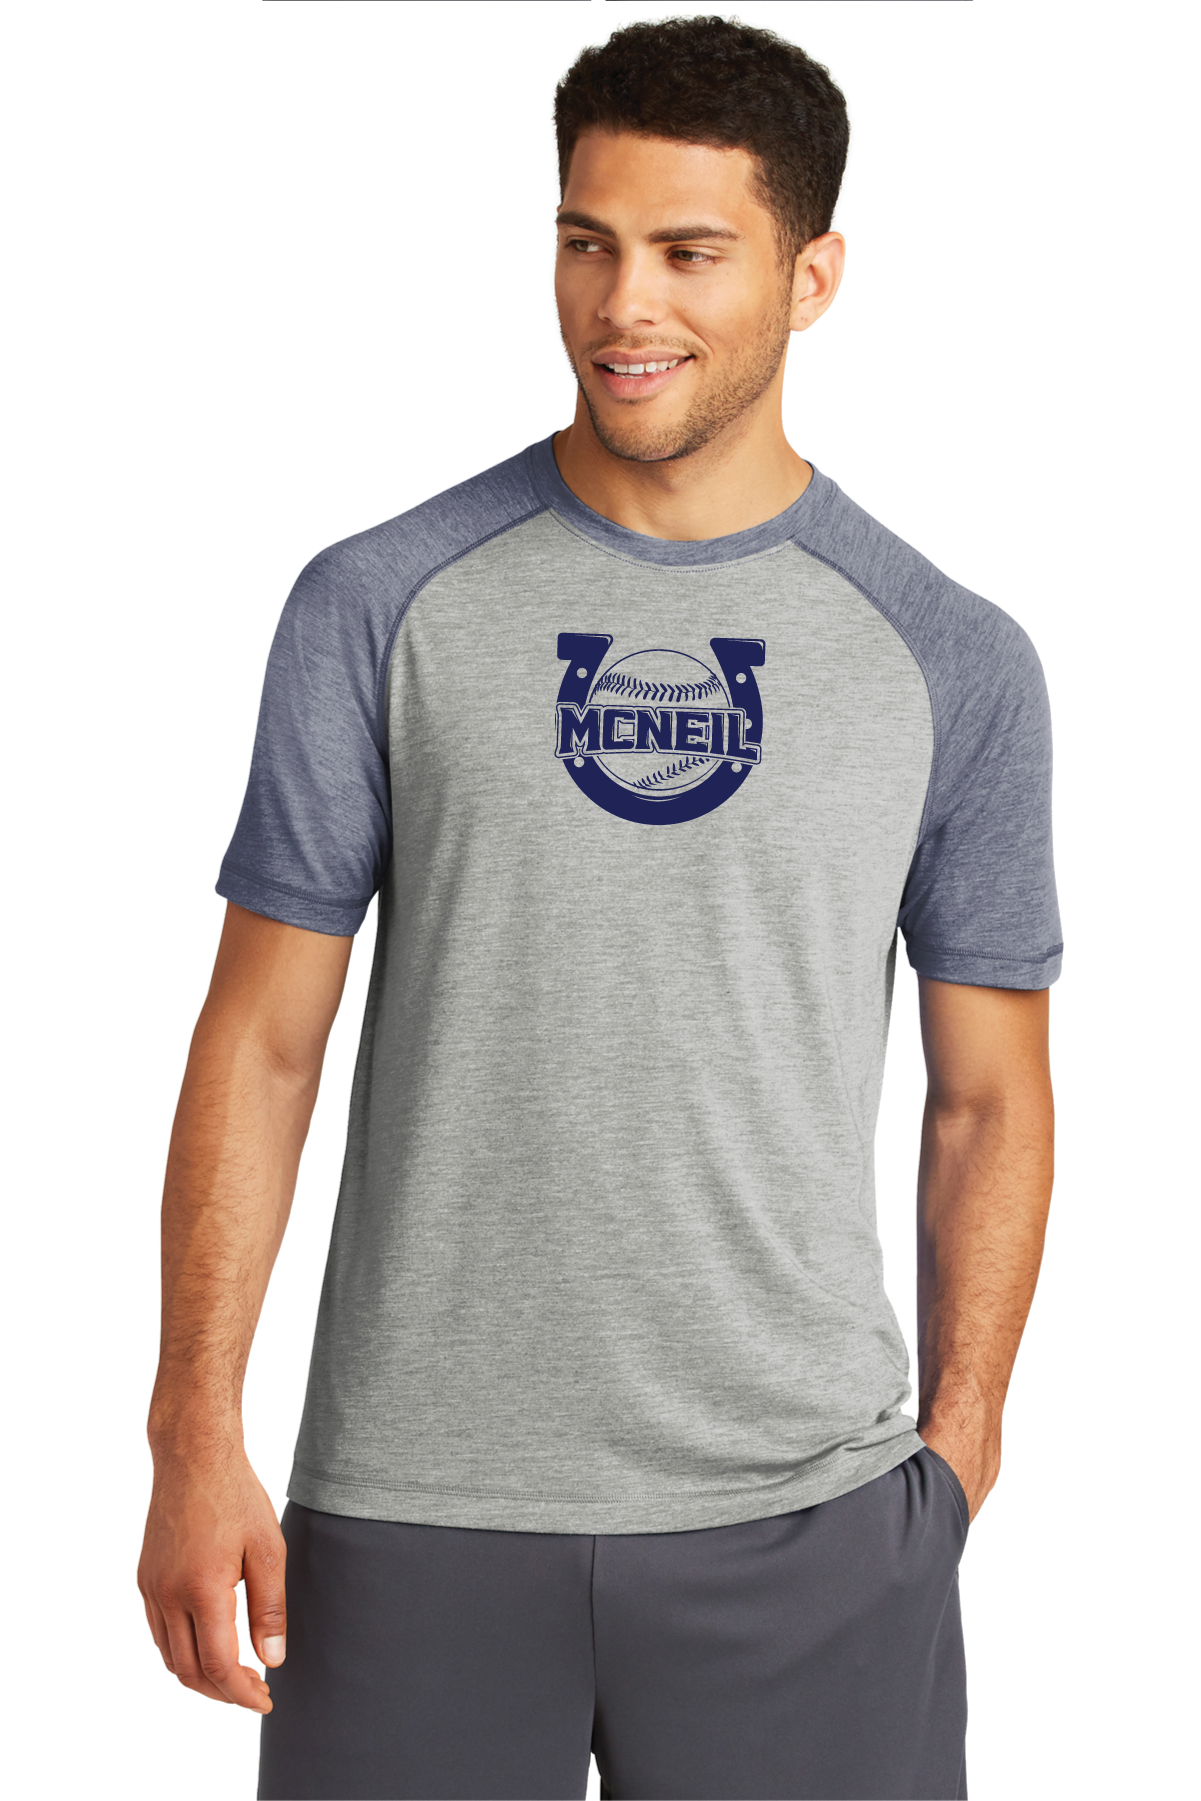 Mavs Baseball - T-Shirts